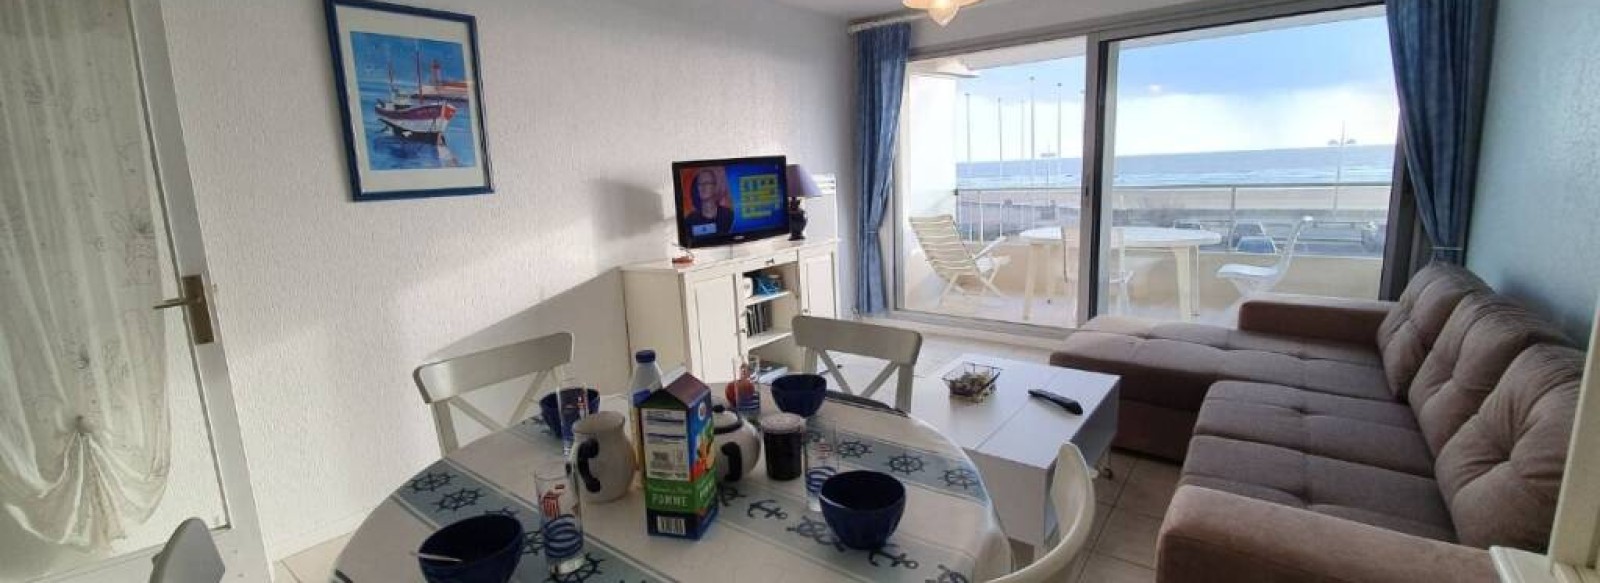 Appartement renove avec balcon face a l'ocean a Saint Jean de Monts